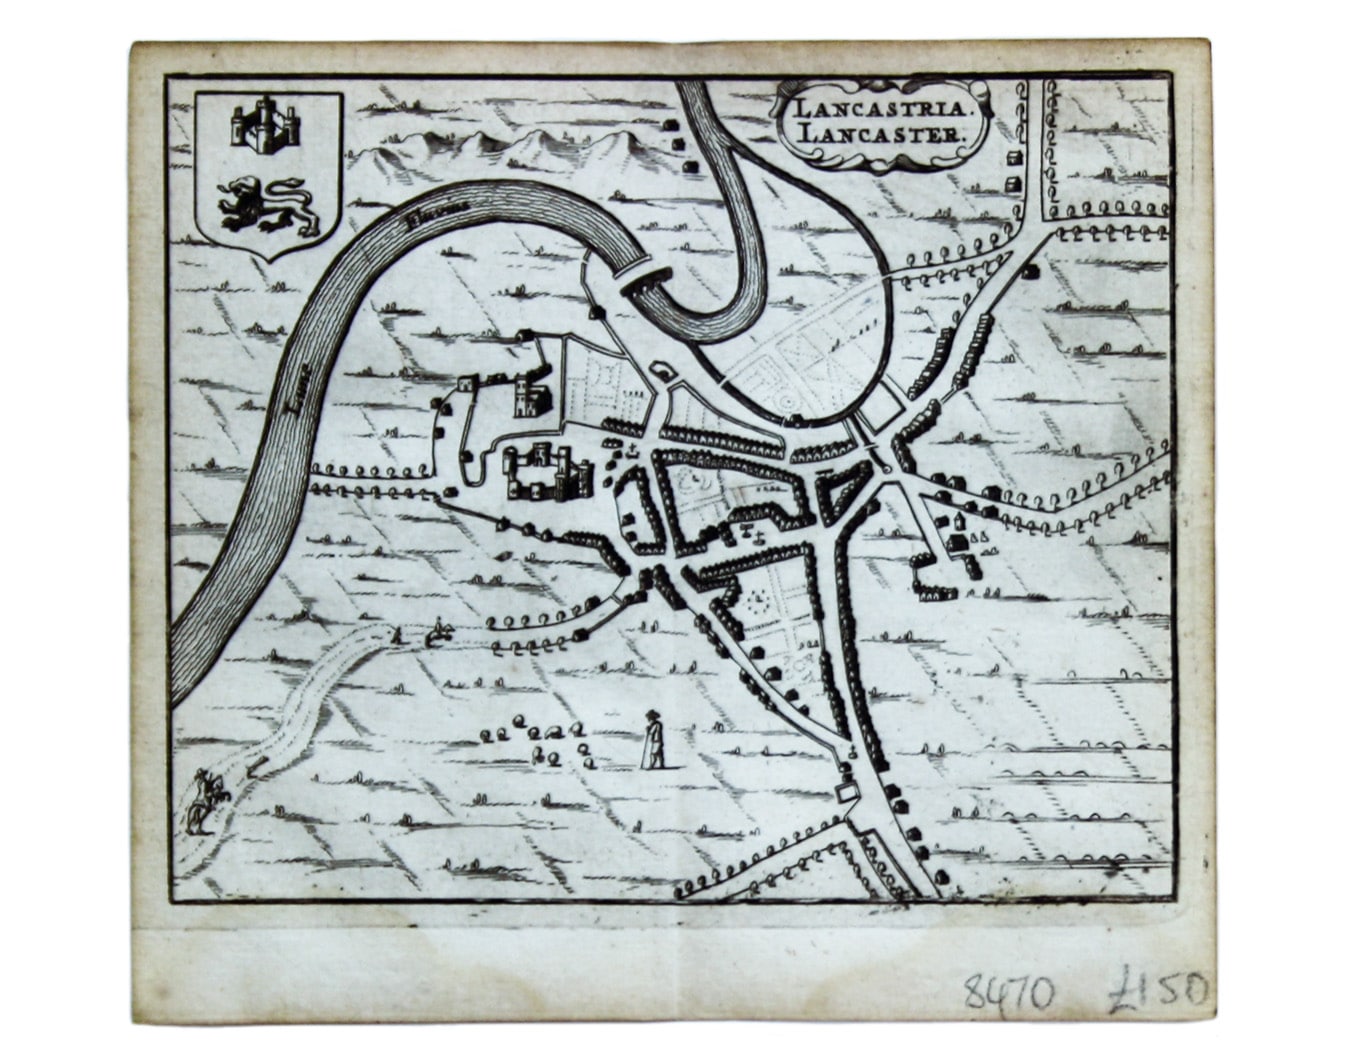 Hermannides’ Plan of Lancaster